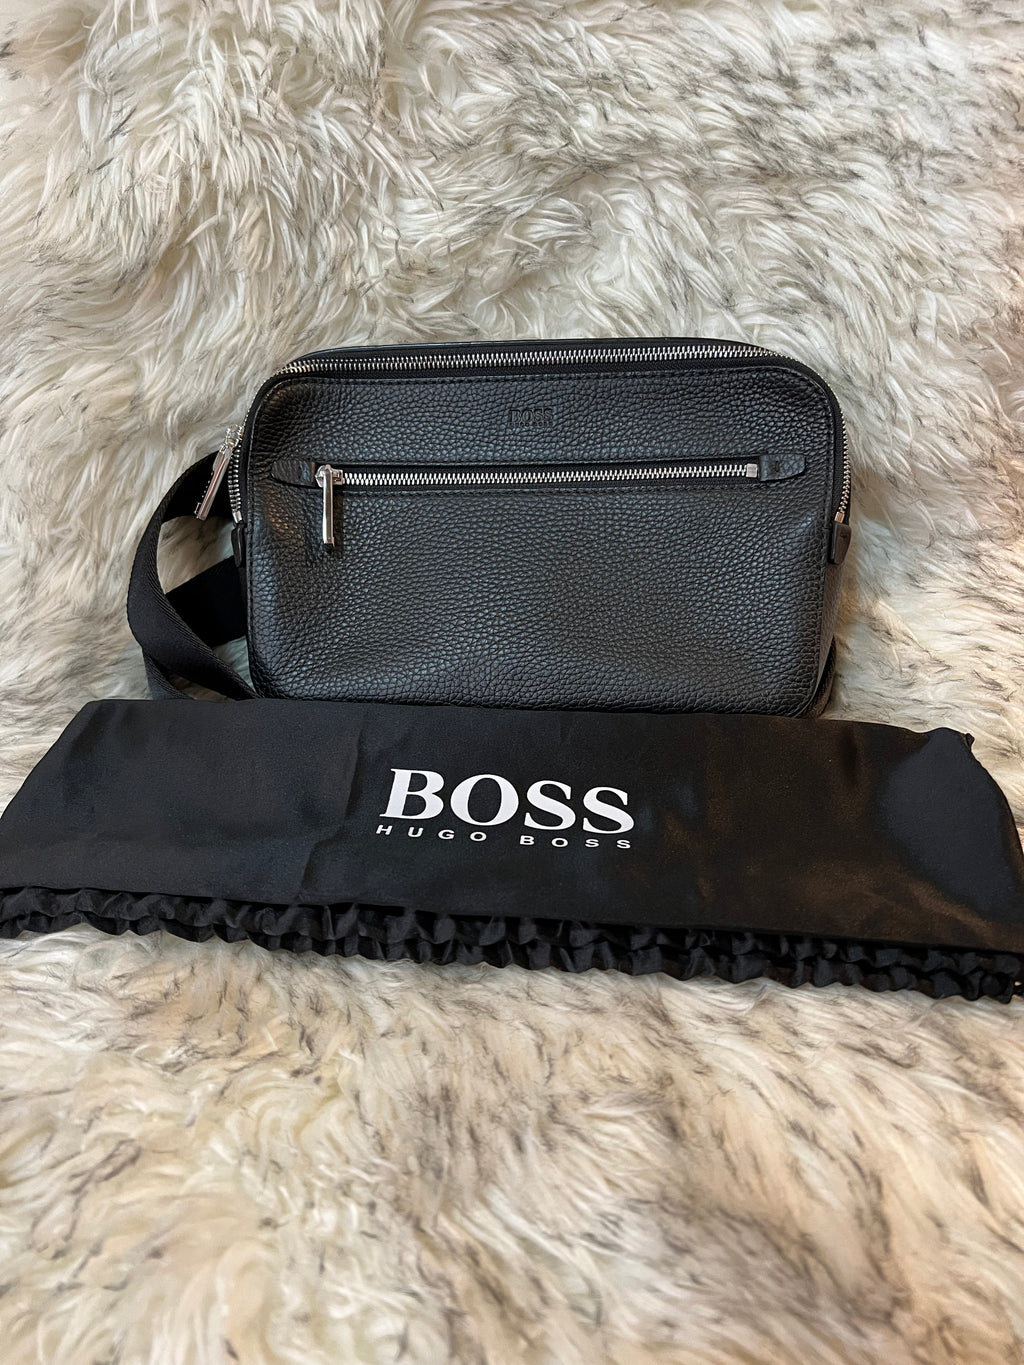 Unused Hugo Boss Body Bag For Men